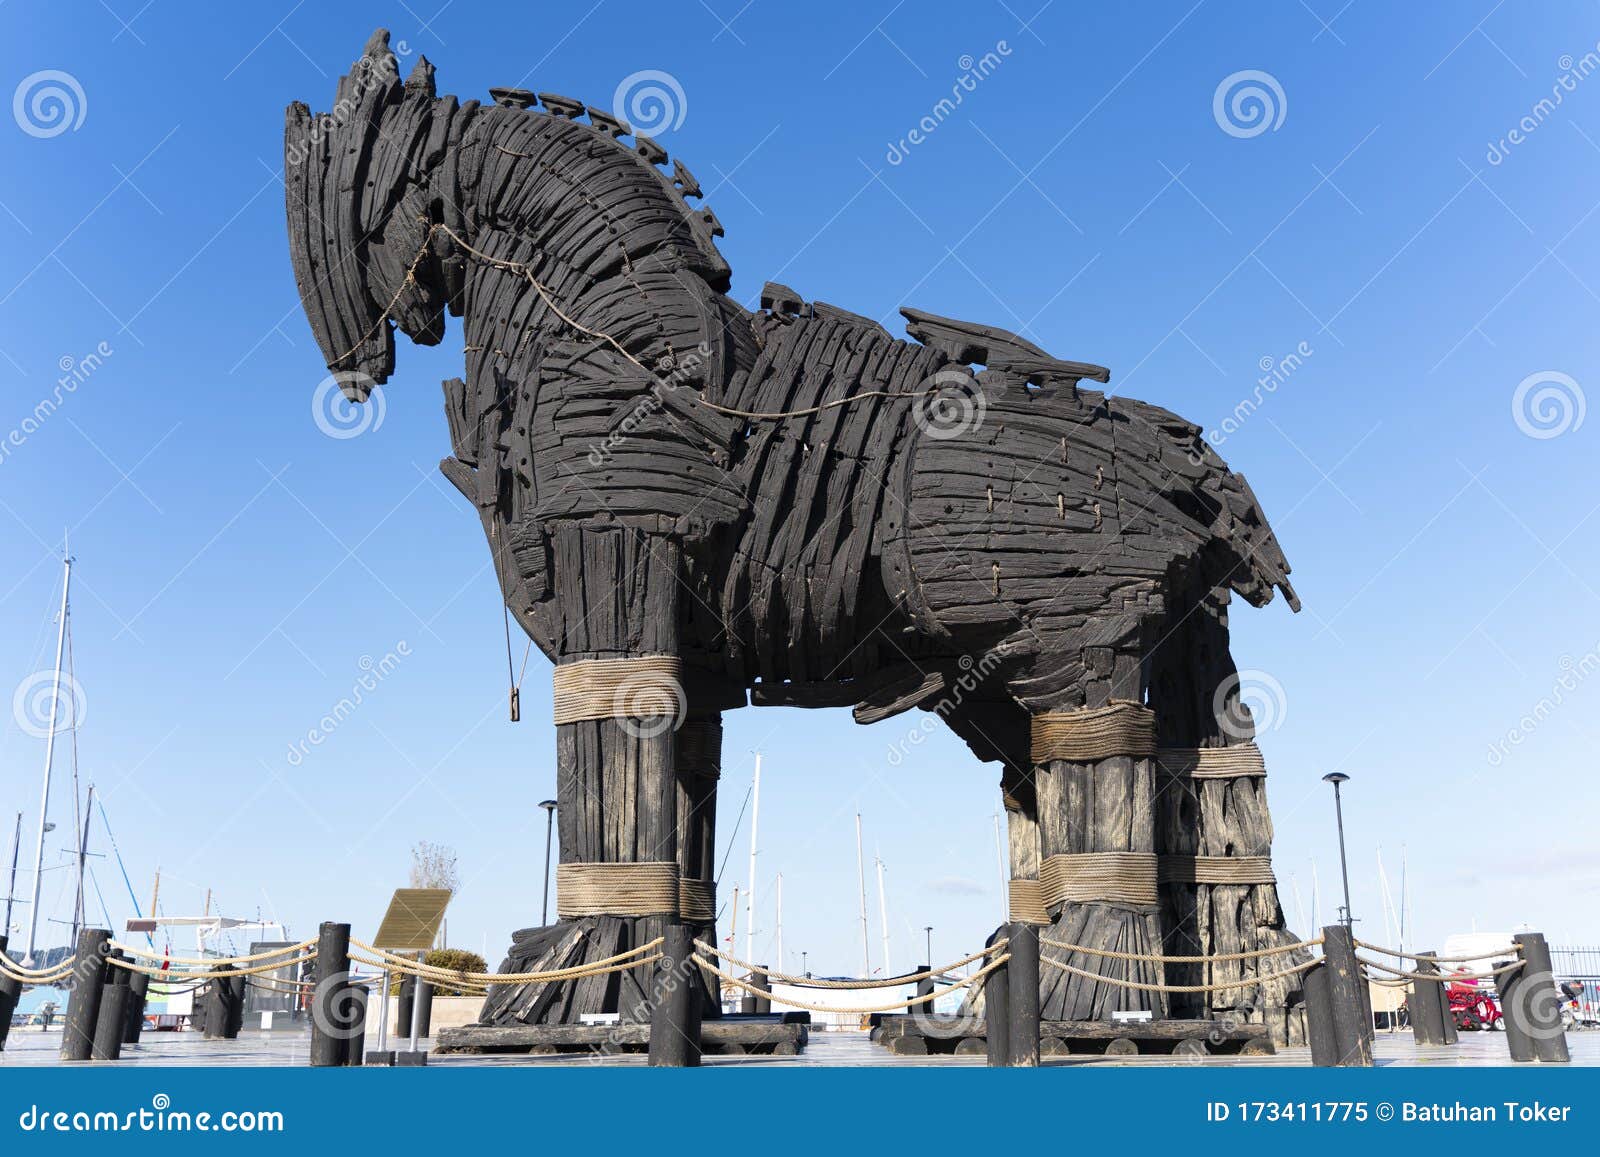 Cavalo De Troia De Madeira Do Filme Troy Foi Doado à Cidade De Canakkale  Imagem de Stock - Imagem de helena, dardanelles: 123322515